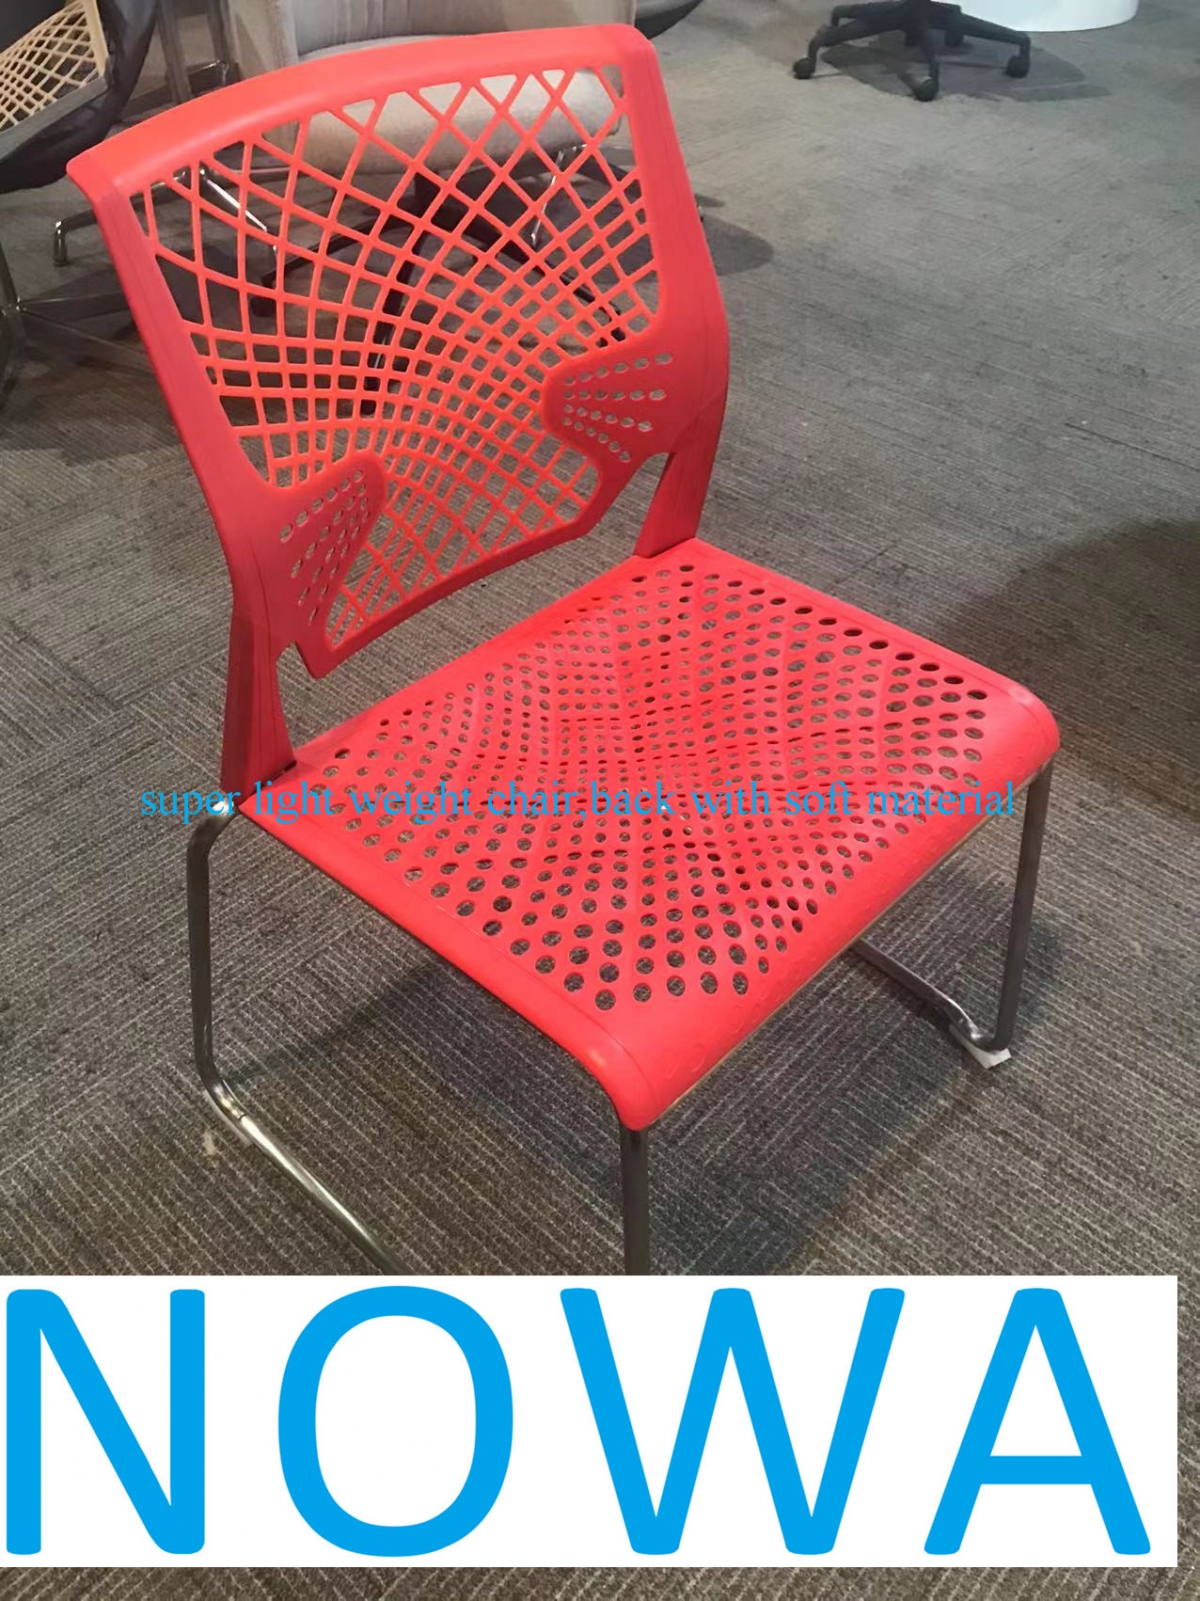 2022 កៅអី PP រចនាដ៏ល្អបំផុតមួយសម្រាប់កន្លែងសាធារណៈដោយប្រើ-NOWA-China Office Furniture, គ្រឿងសង្ហារឹមដែលផលិតតាមតម្រូវការរបស់ប្រទេសចិន,